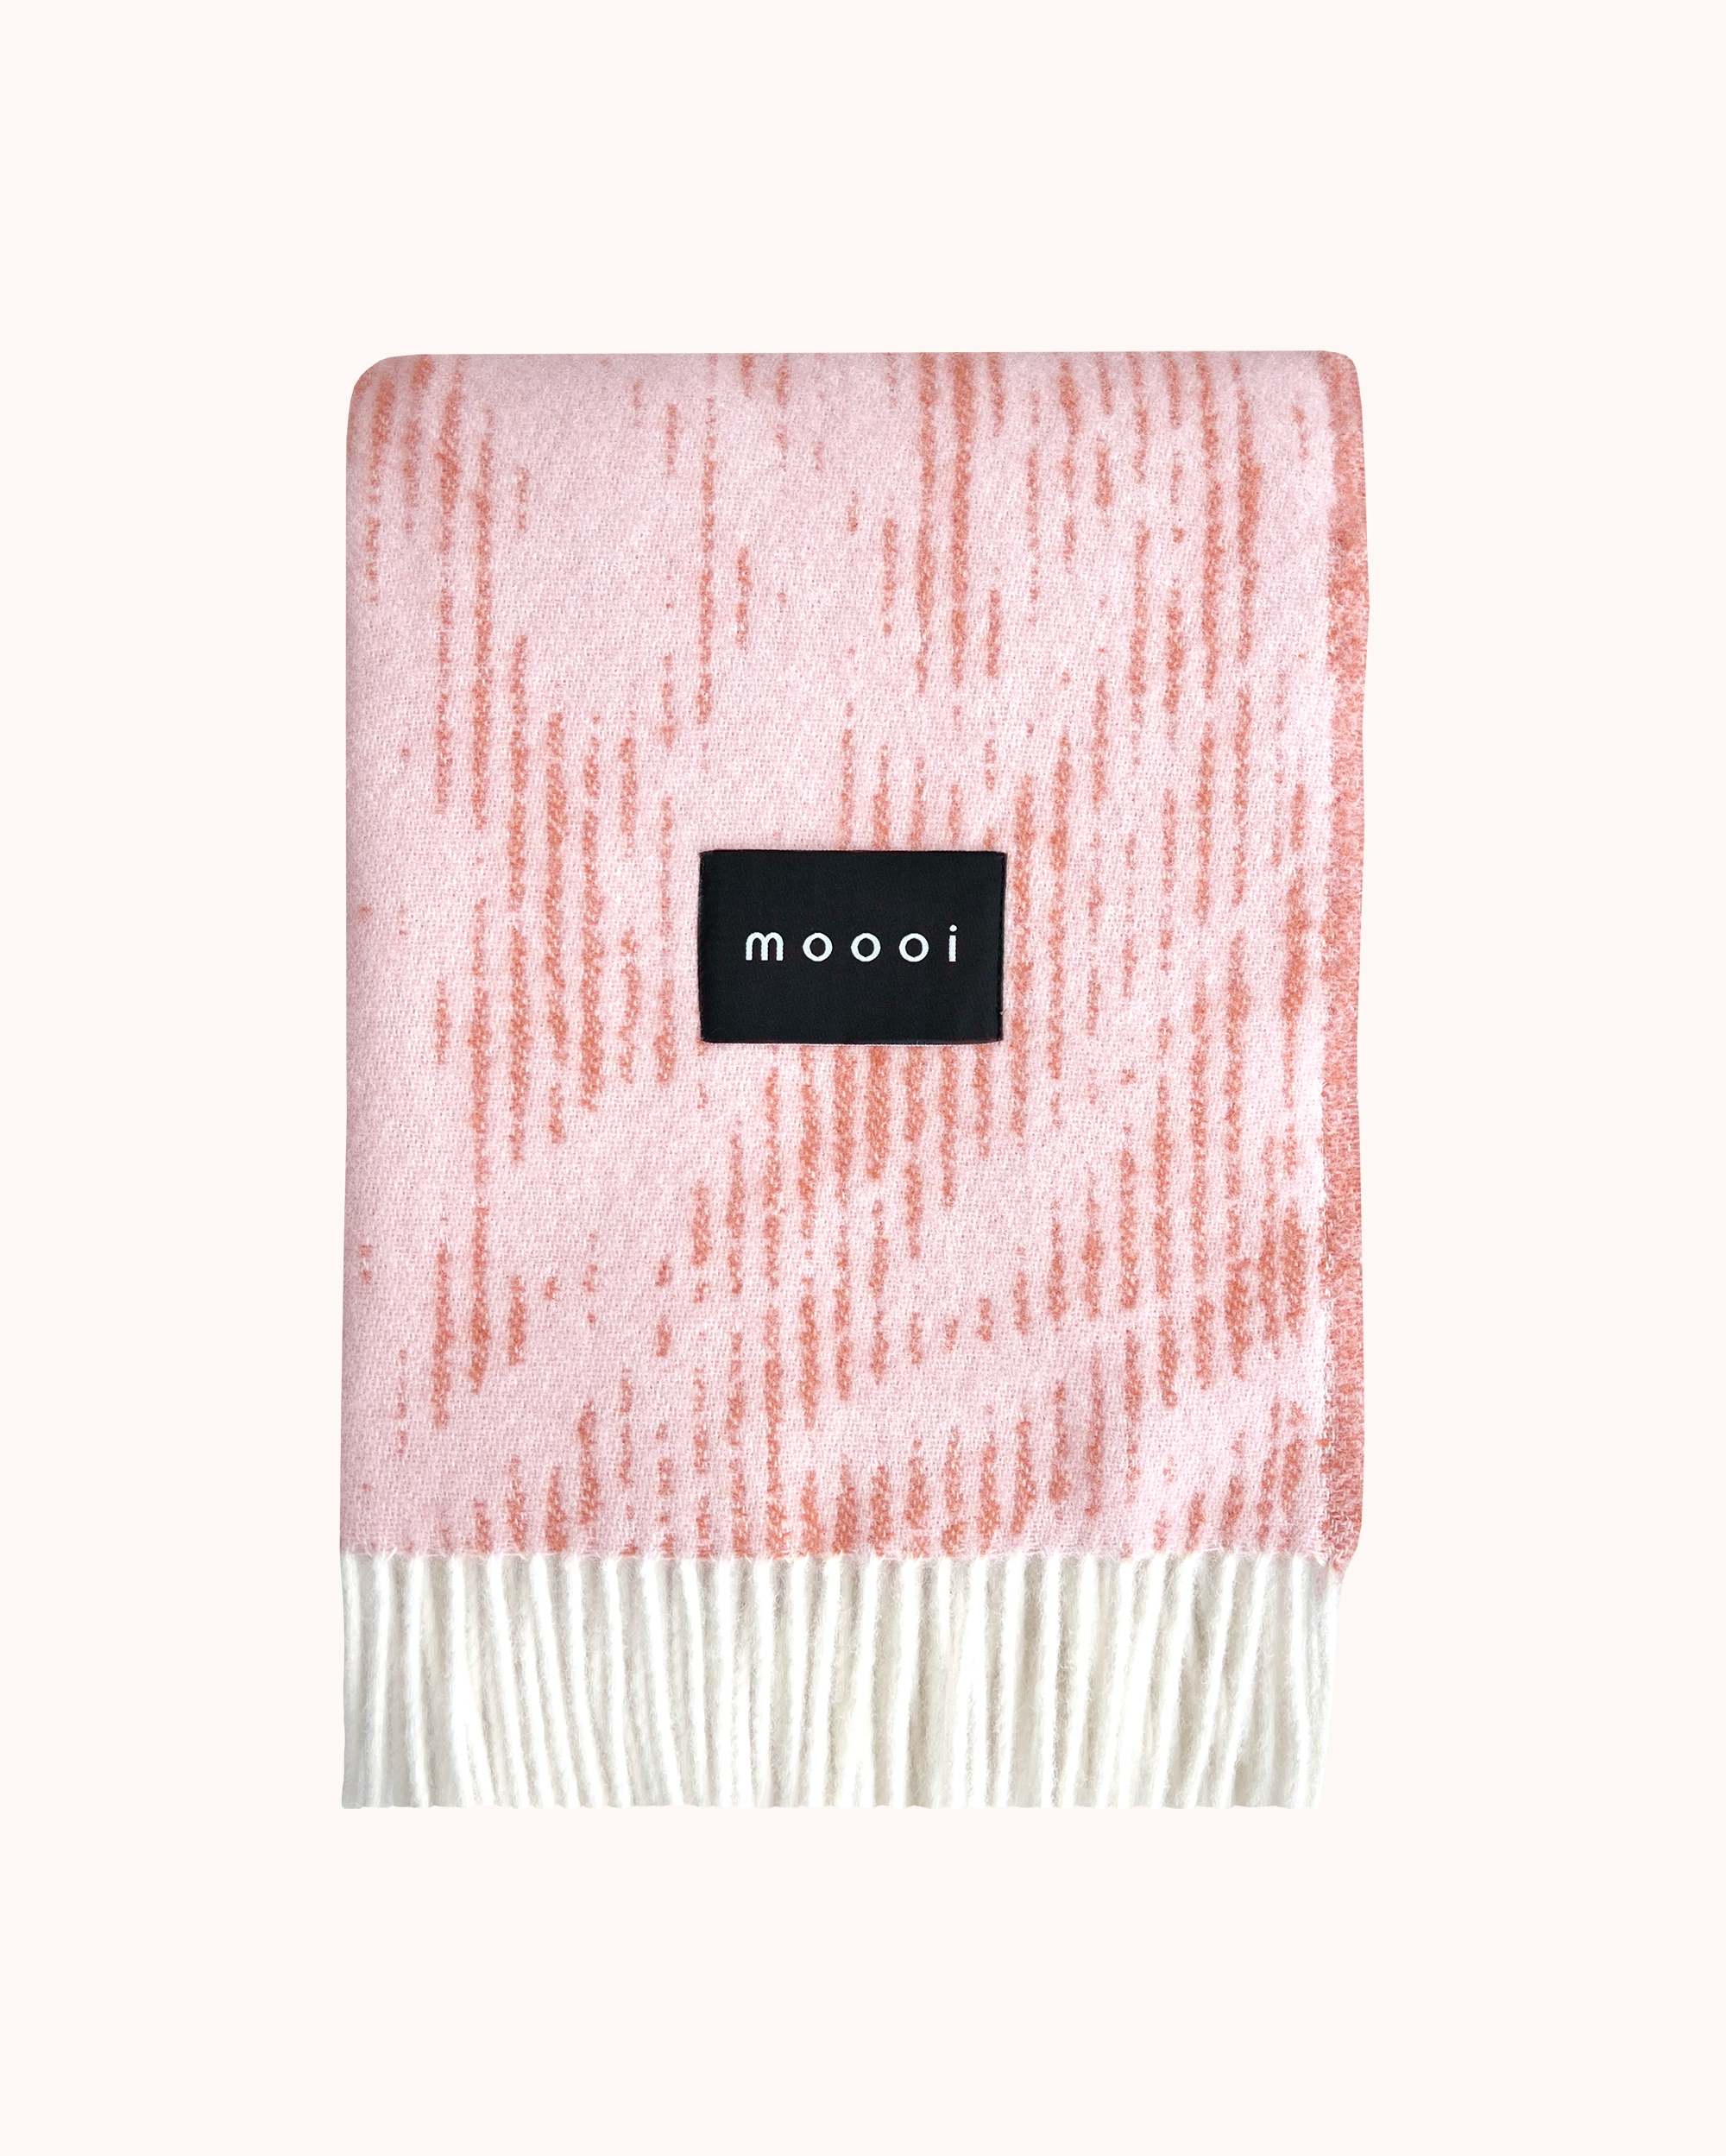 Moooi Blanket - Blushing Sloth Pink Rust